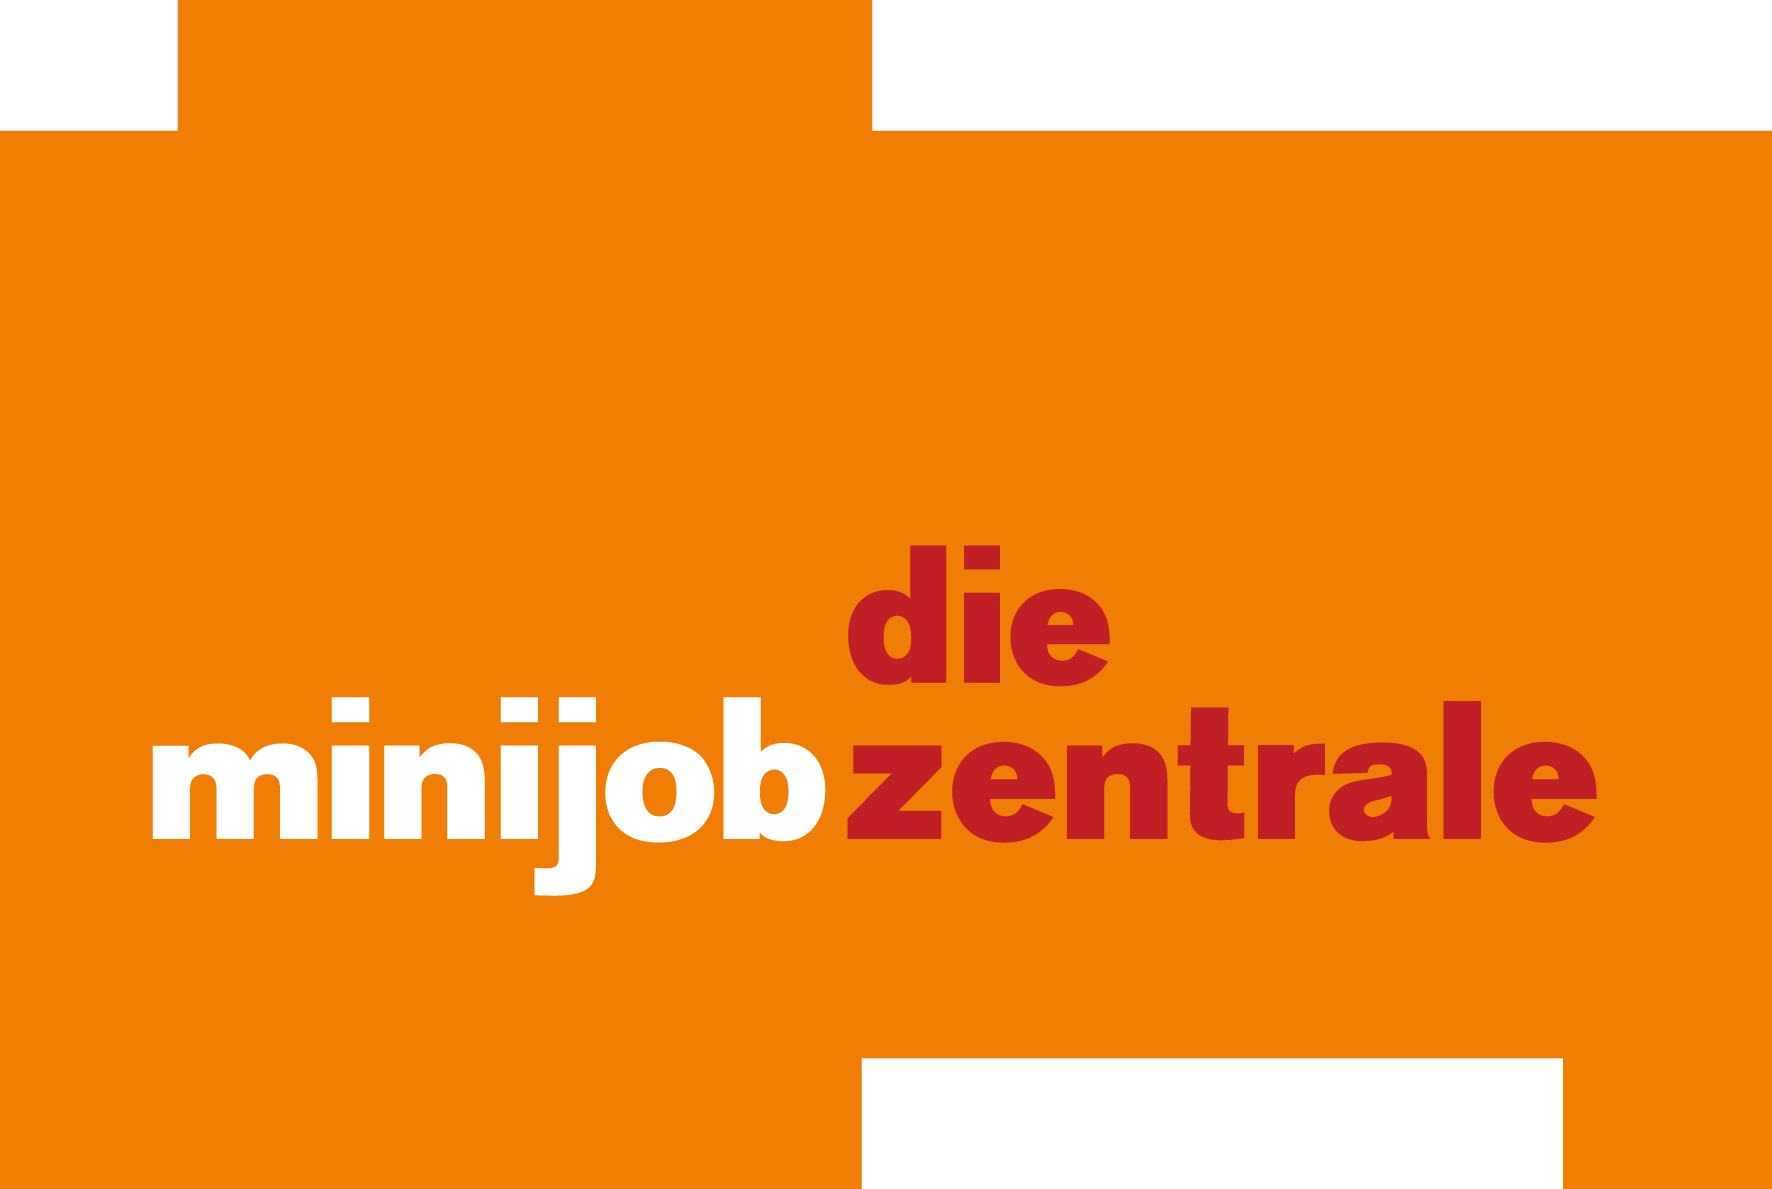 Minijob-Zentrale - Deutsche Rentenversicherung Knappschaft-Bahn-See Logo